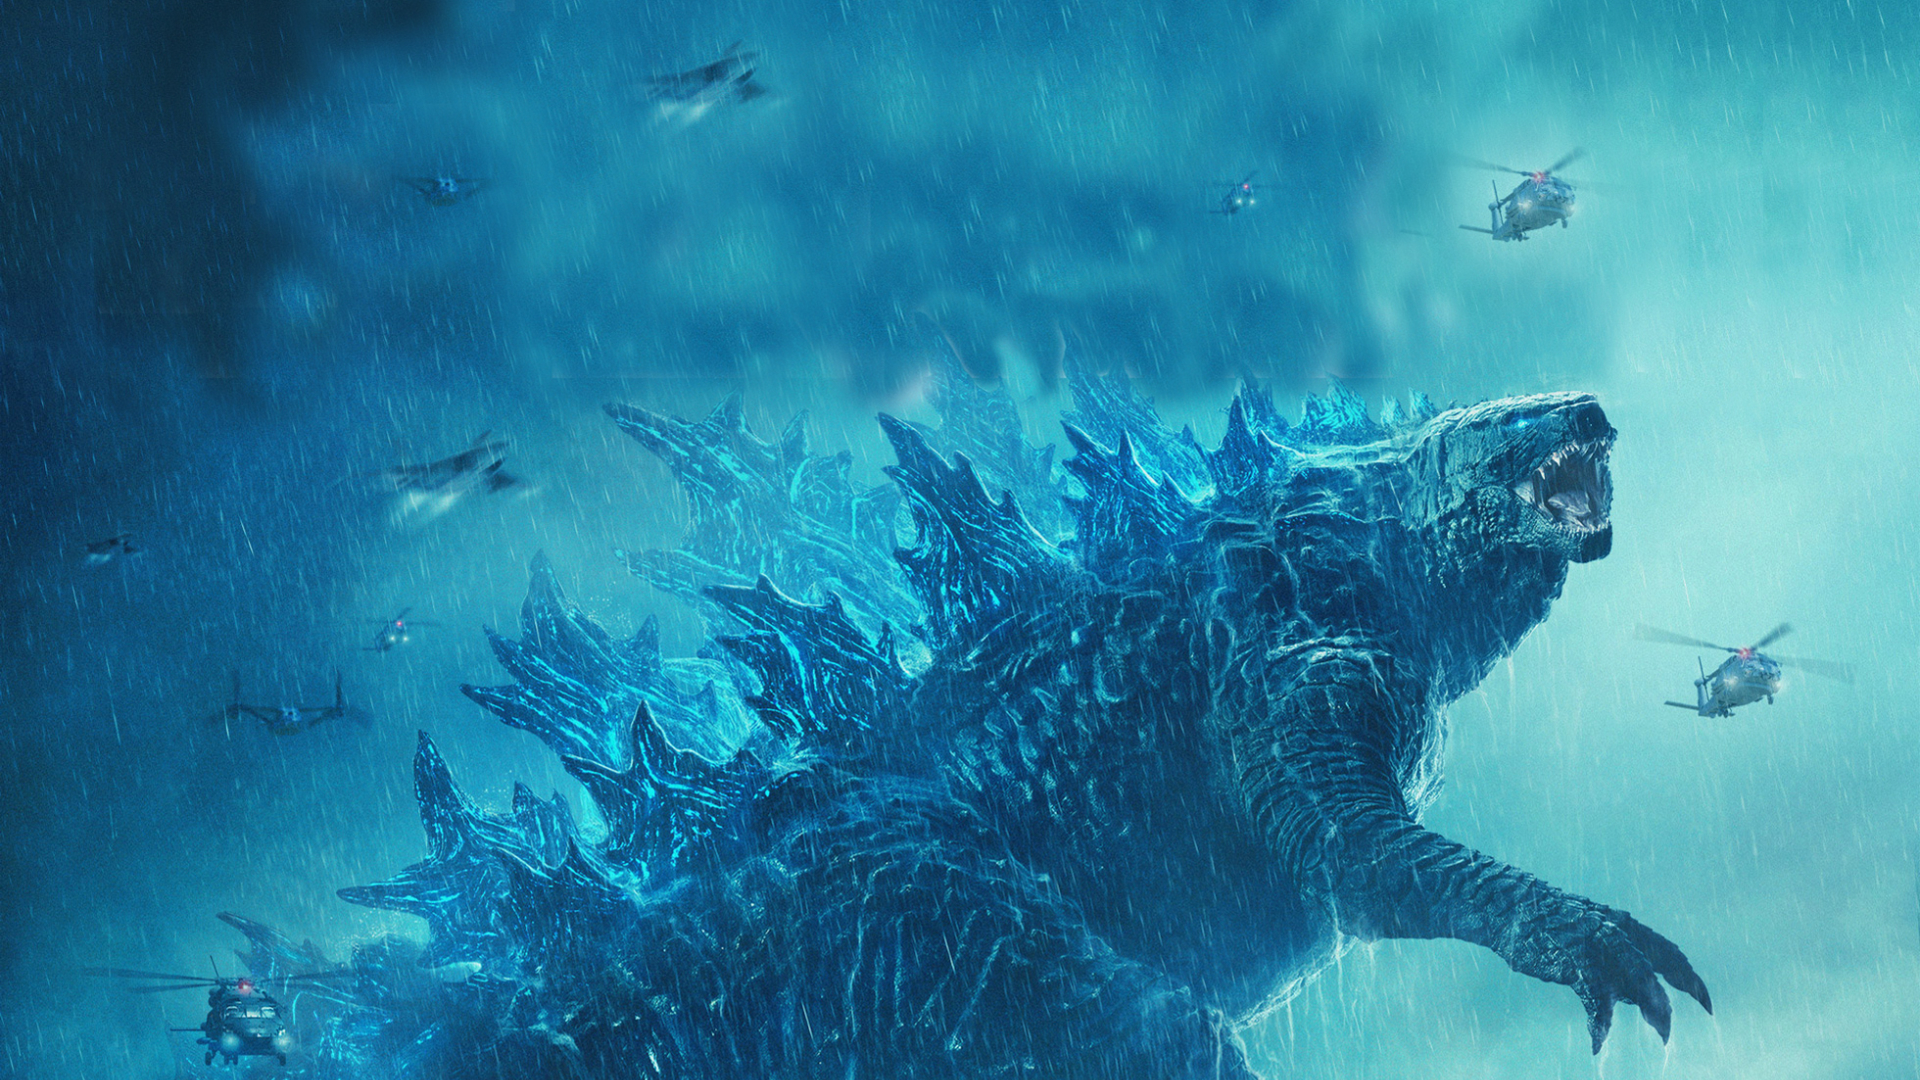 Godzilla 2019 Wallpaper 4k - 1920x1080 Wallpaper 